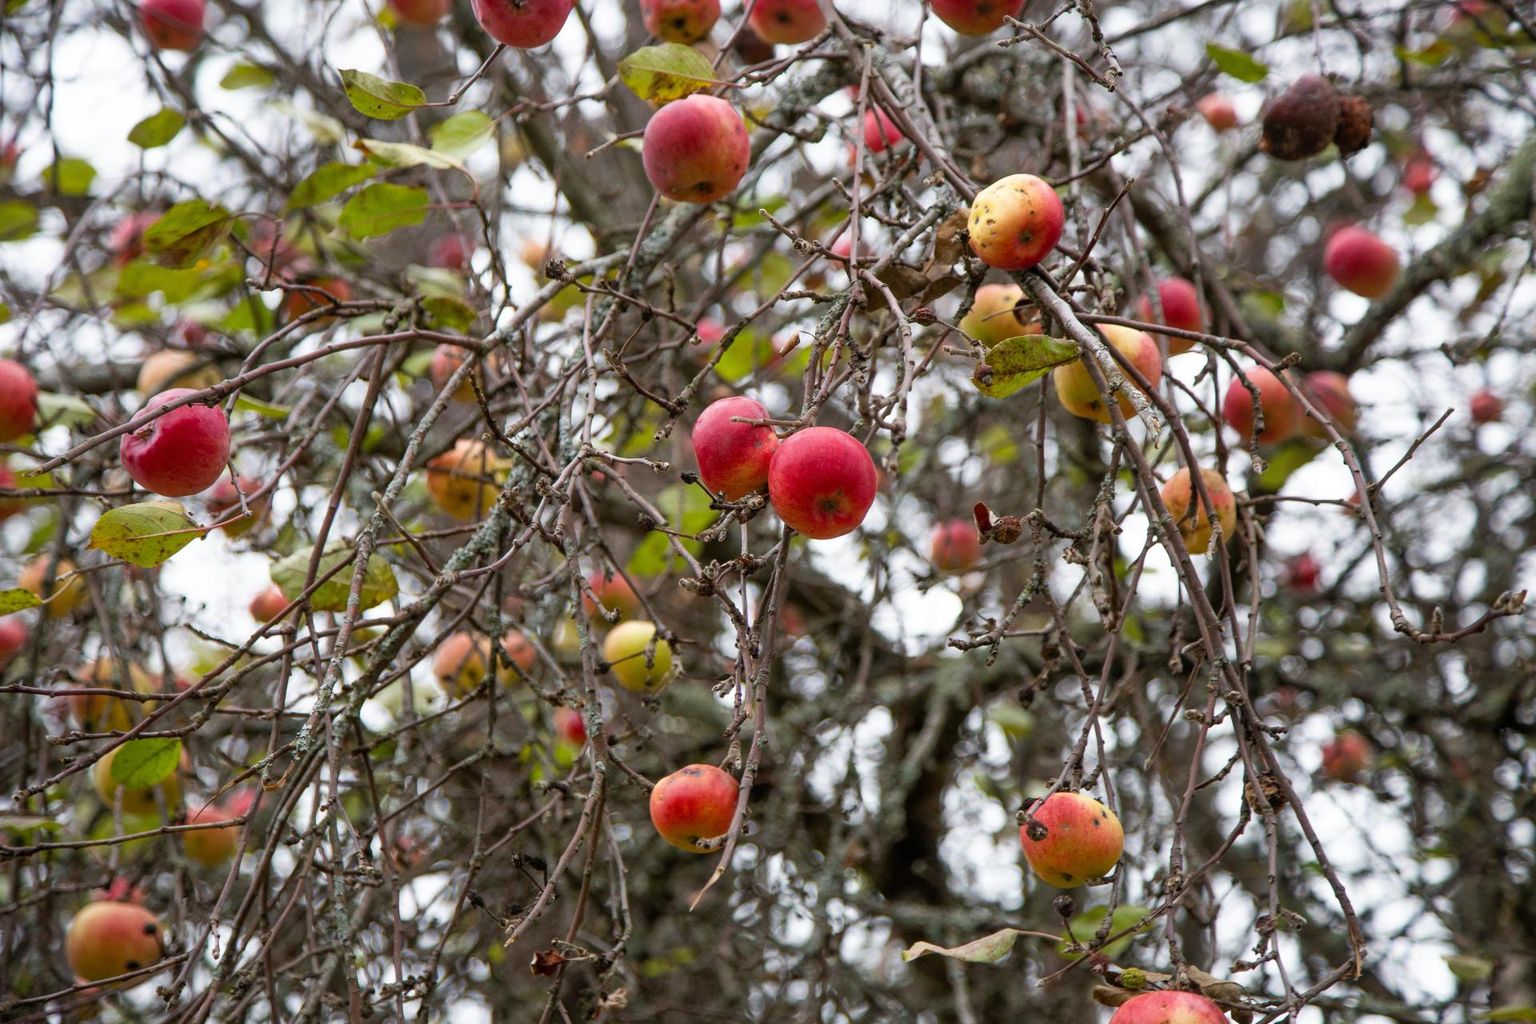 Mahakukkunud õunad võib teha näiteks kompostiks, kuid eriti linnas ei tohiks neid ladustada metsa- või pargipuude alla.